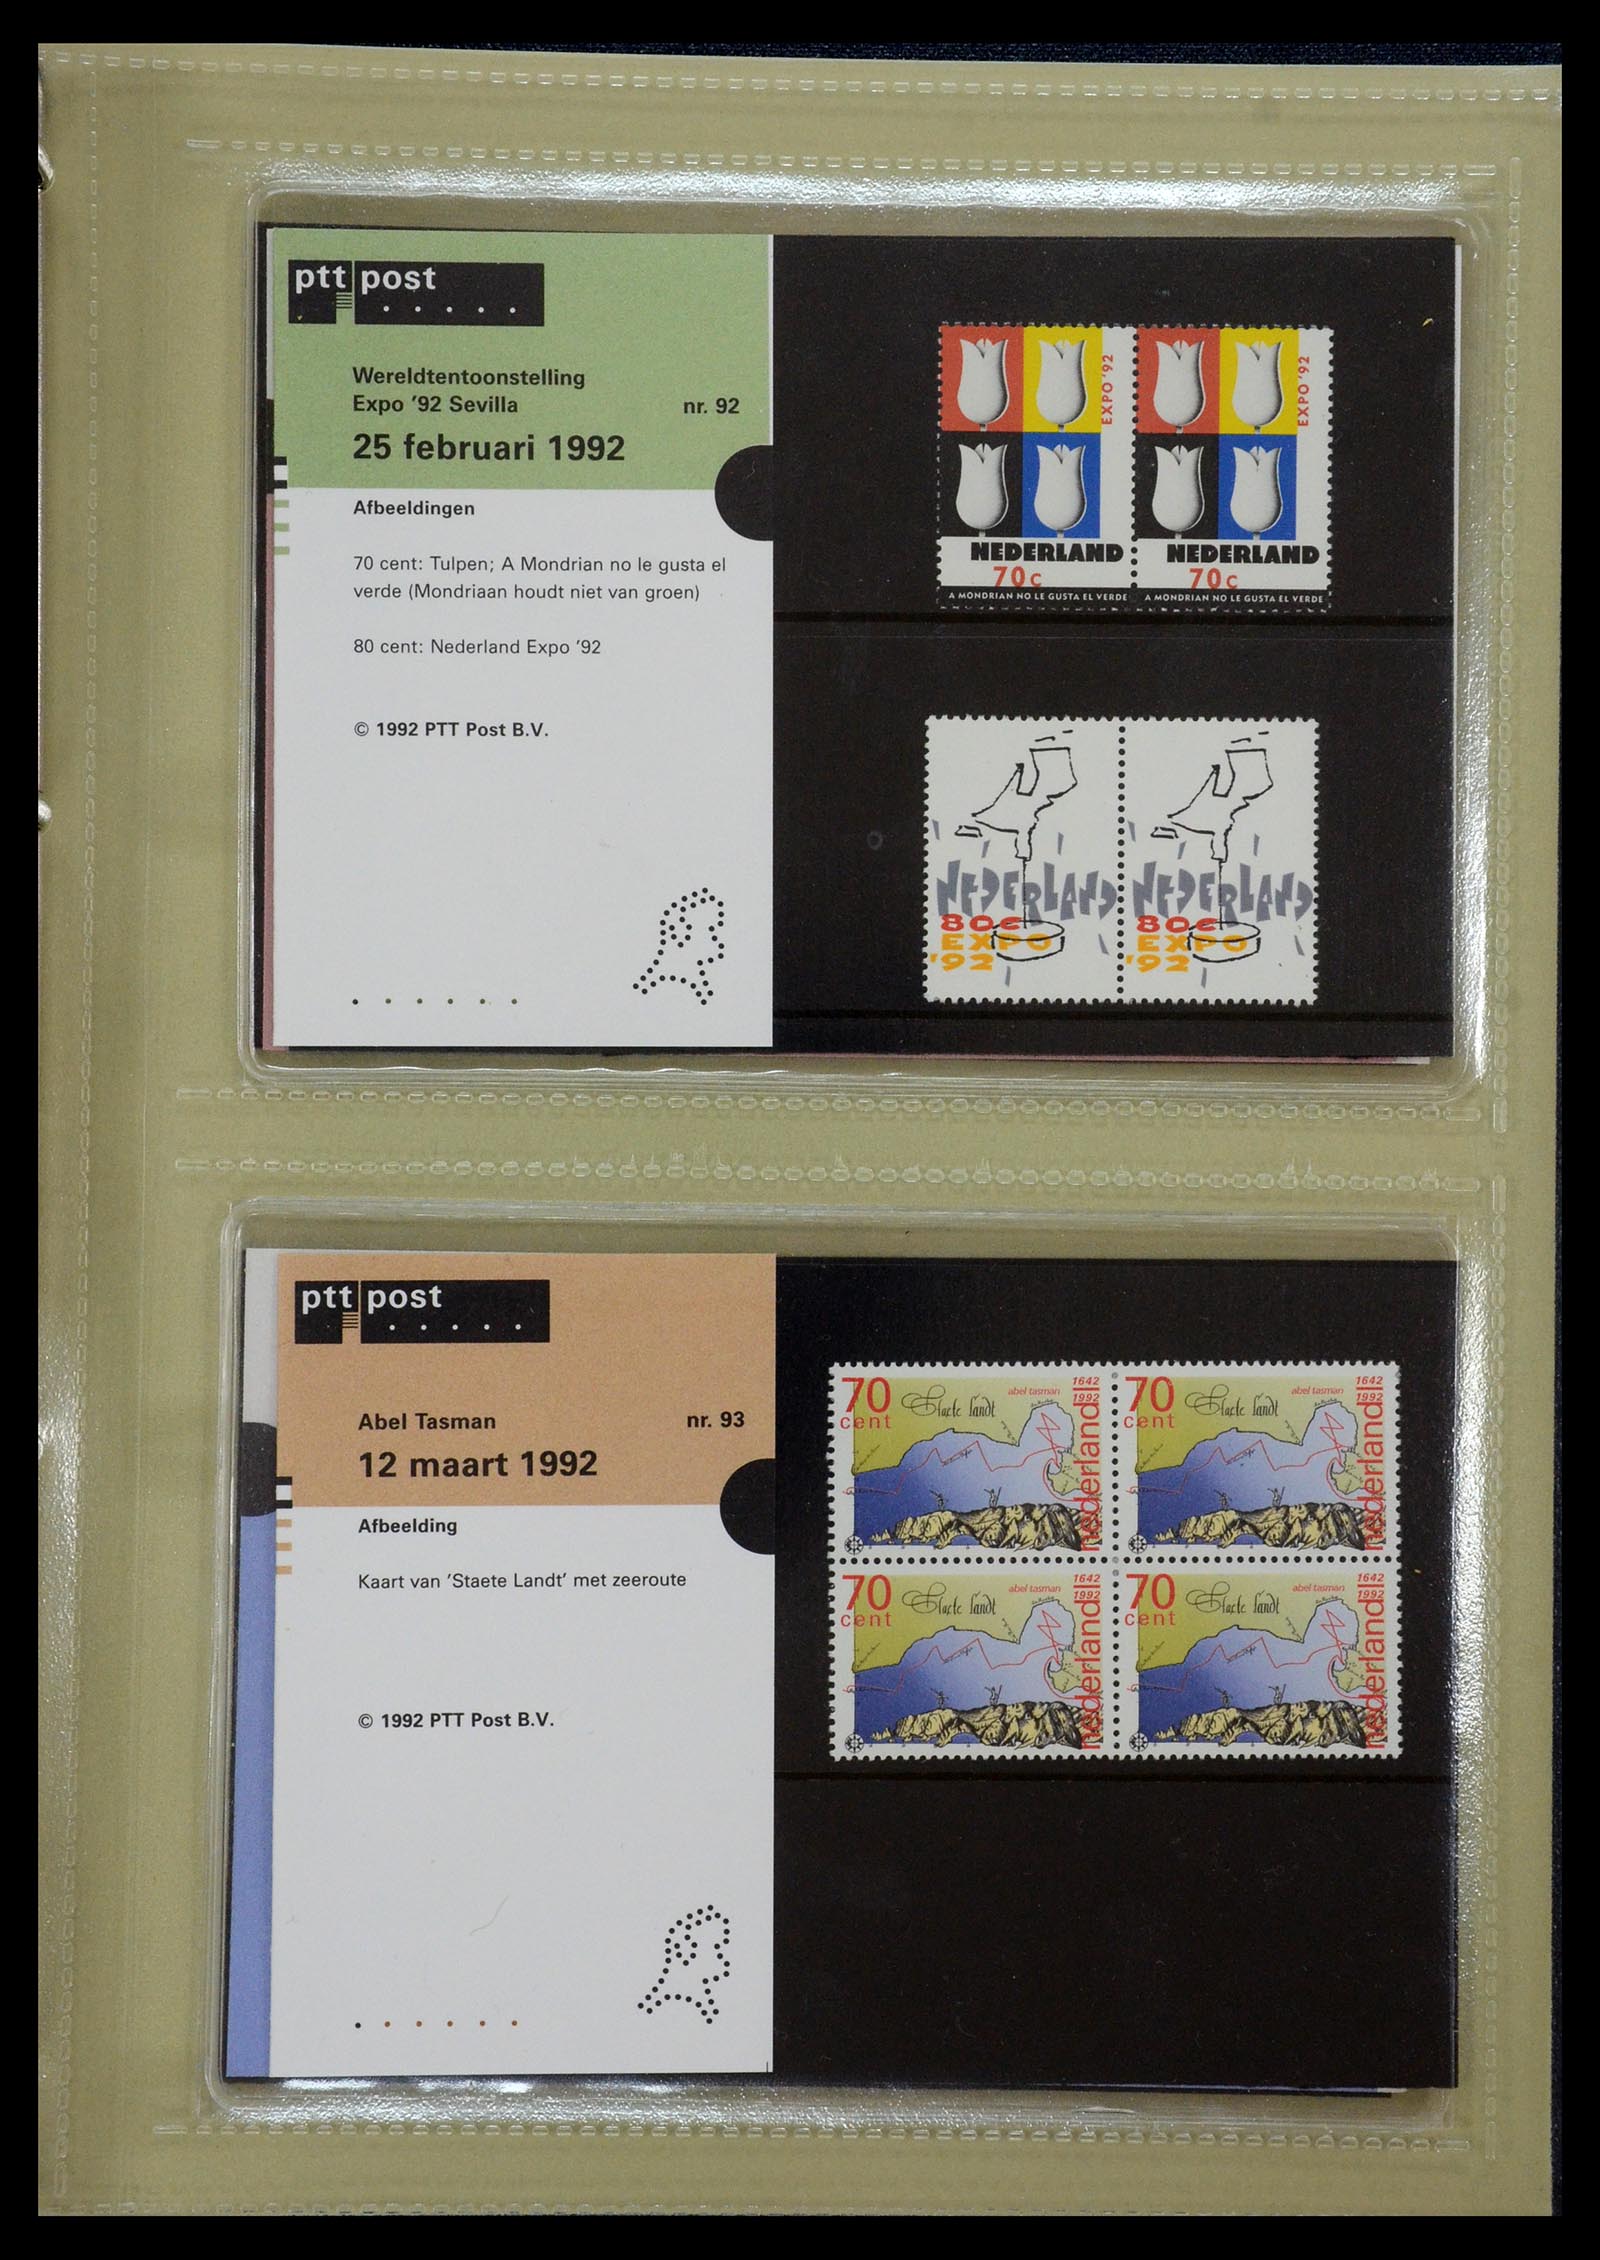 35144 047 - Stamp Collection 35144 Netherlands PTT presentation packs 1982-2021!